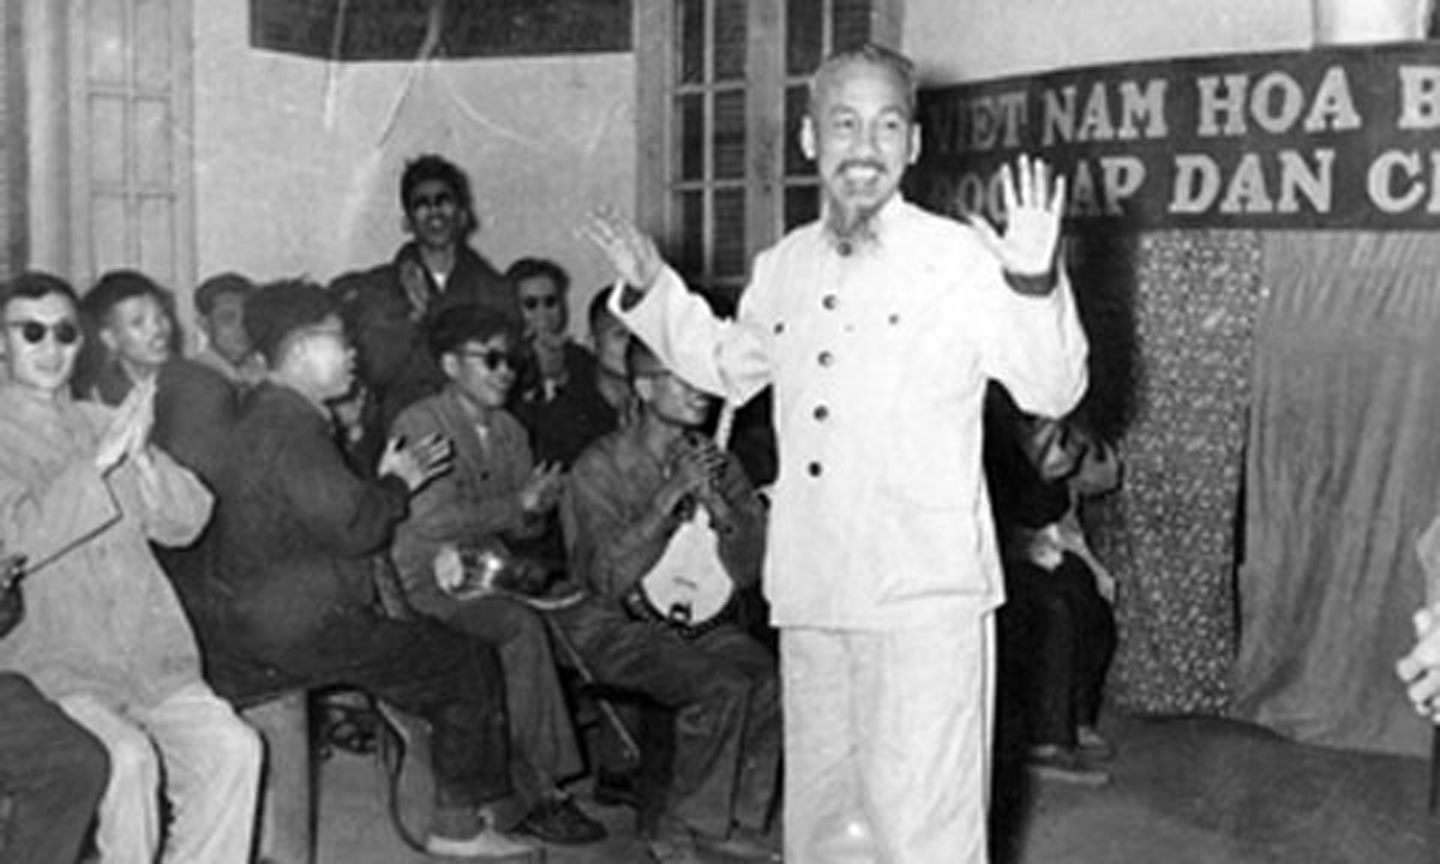 Chủ tịch Hồ Chí Minh thăm trường thương binh hỏng mắt ở Hà Nội, Người nói: “Thương binh tàn, nhưng không phế”, ngày 11-2-1956.